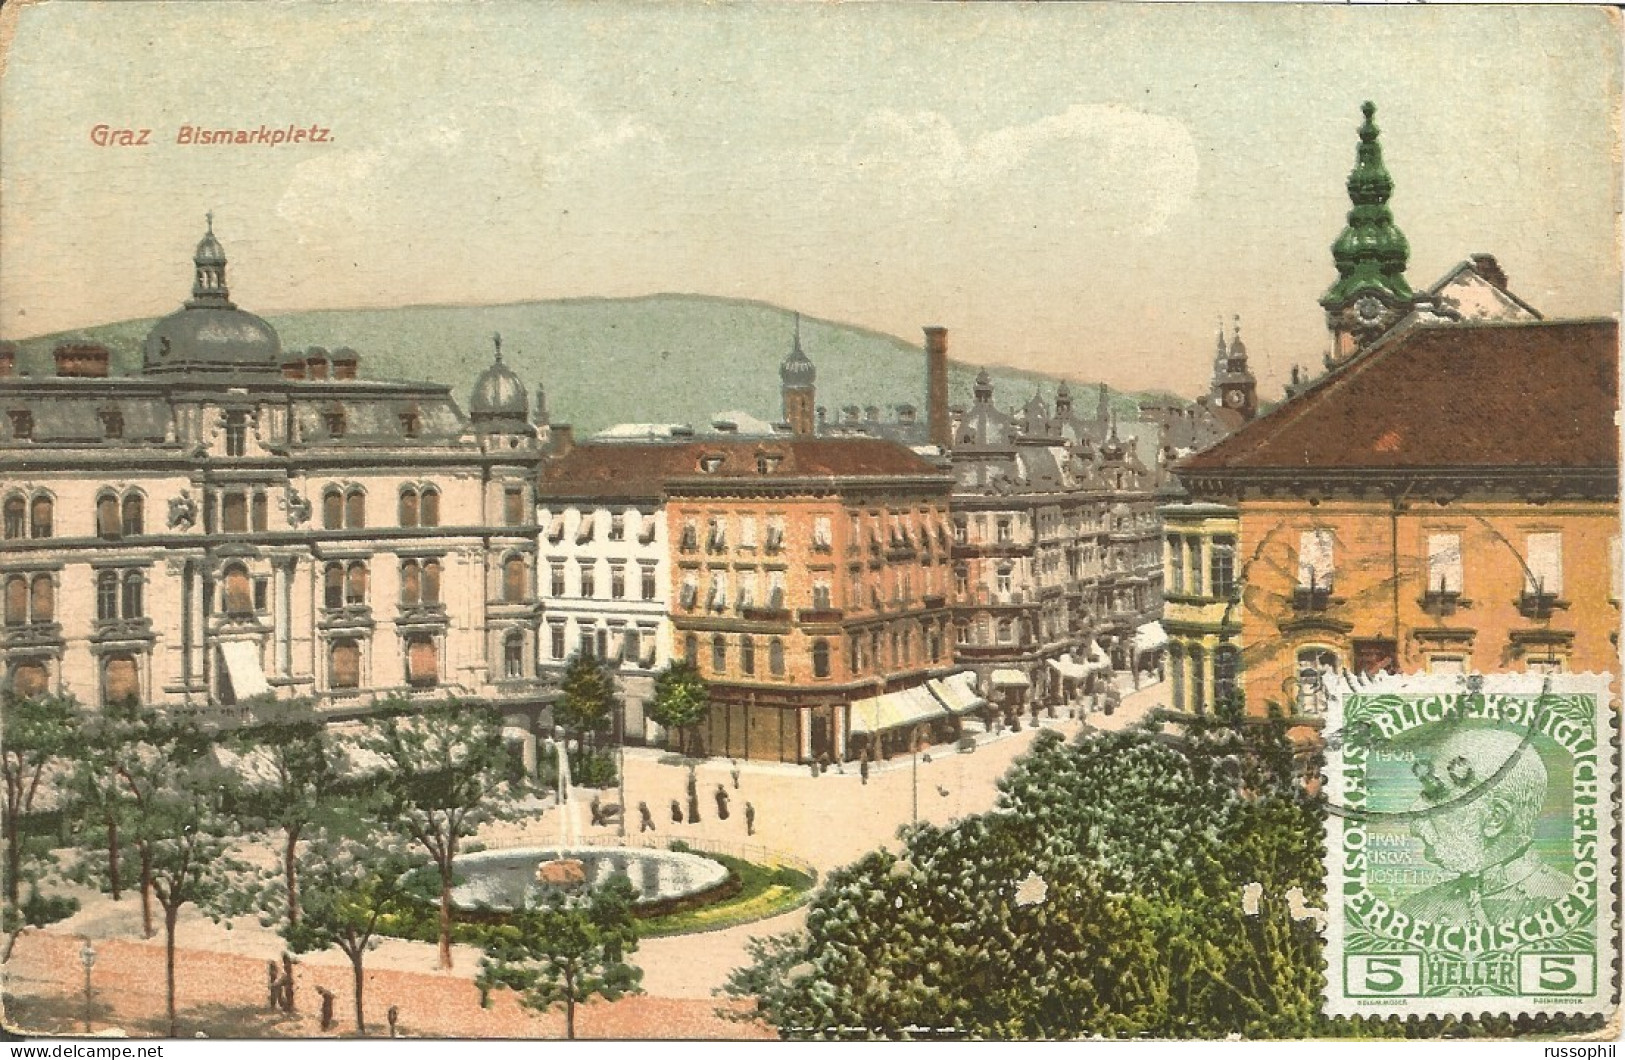 AUSTRIA - GRAZ - BISMARKPLATZ - ED. SCHLAUER REF #8.6.08  - 1912   - Graz